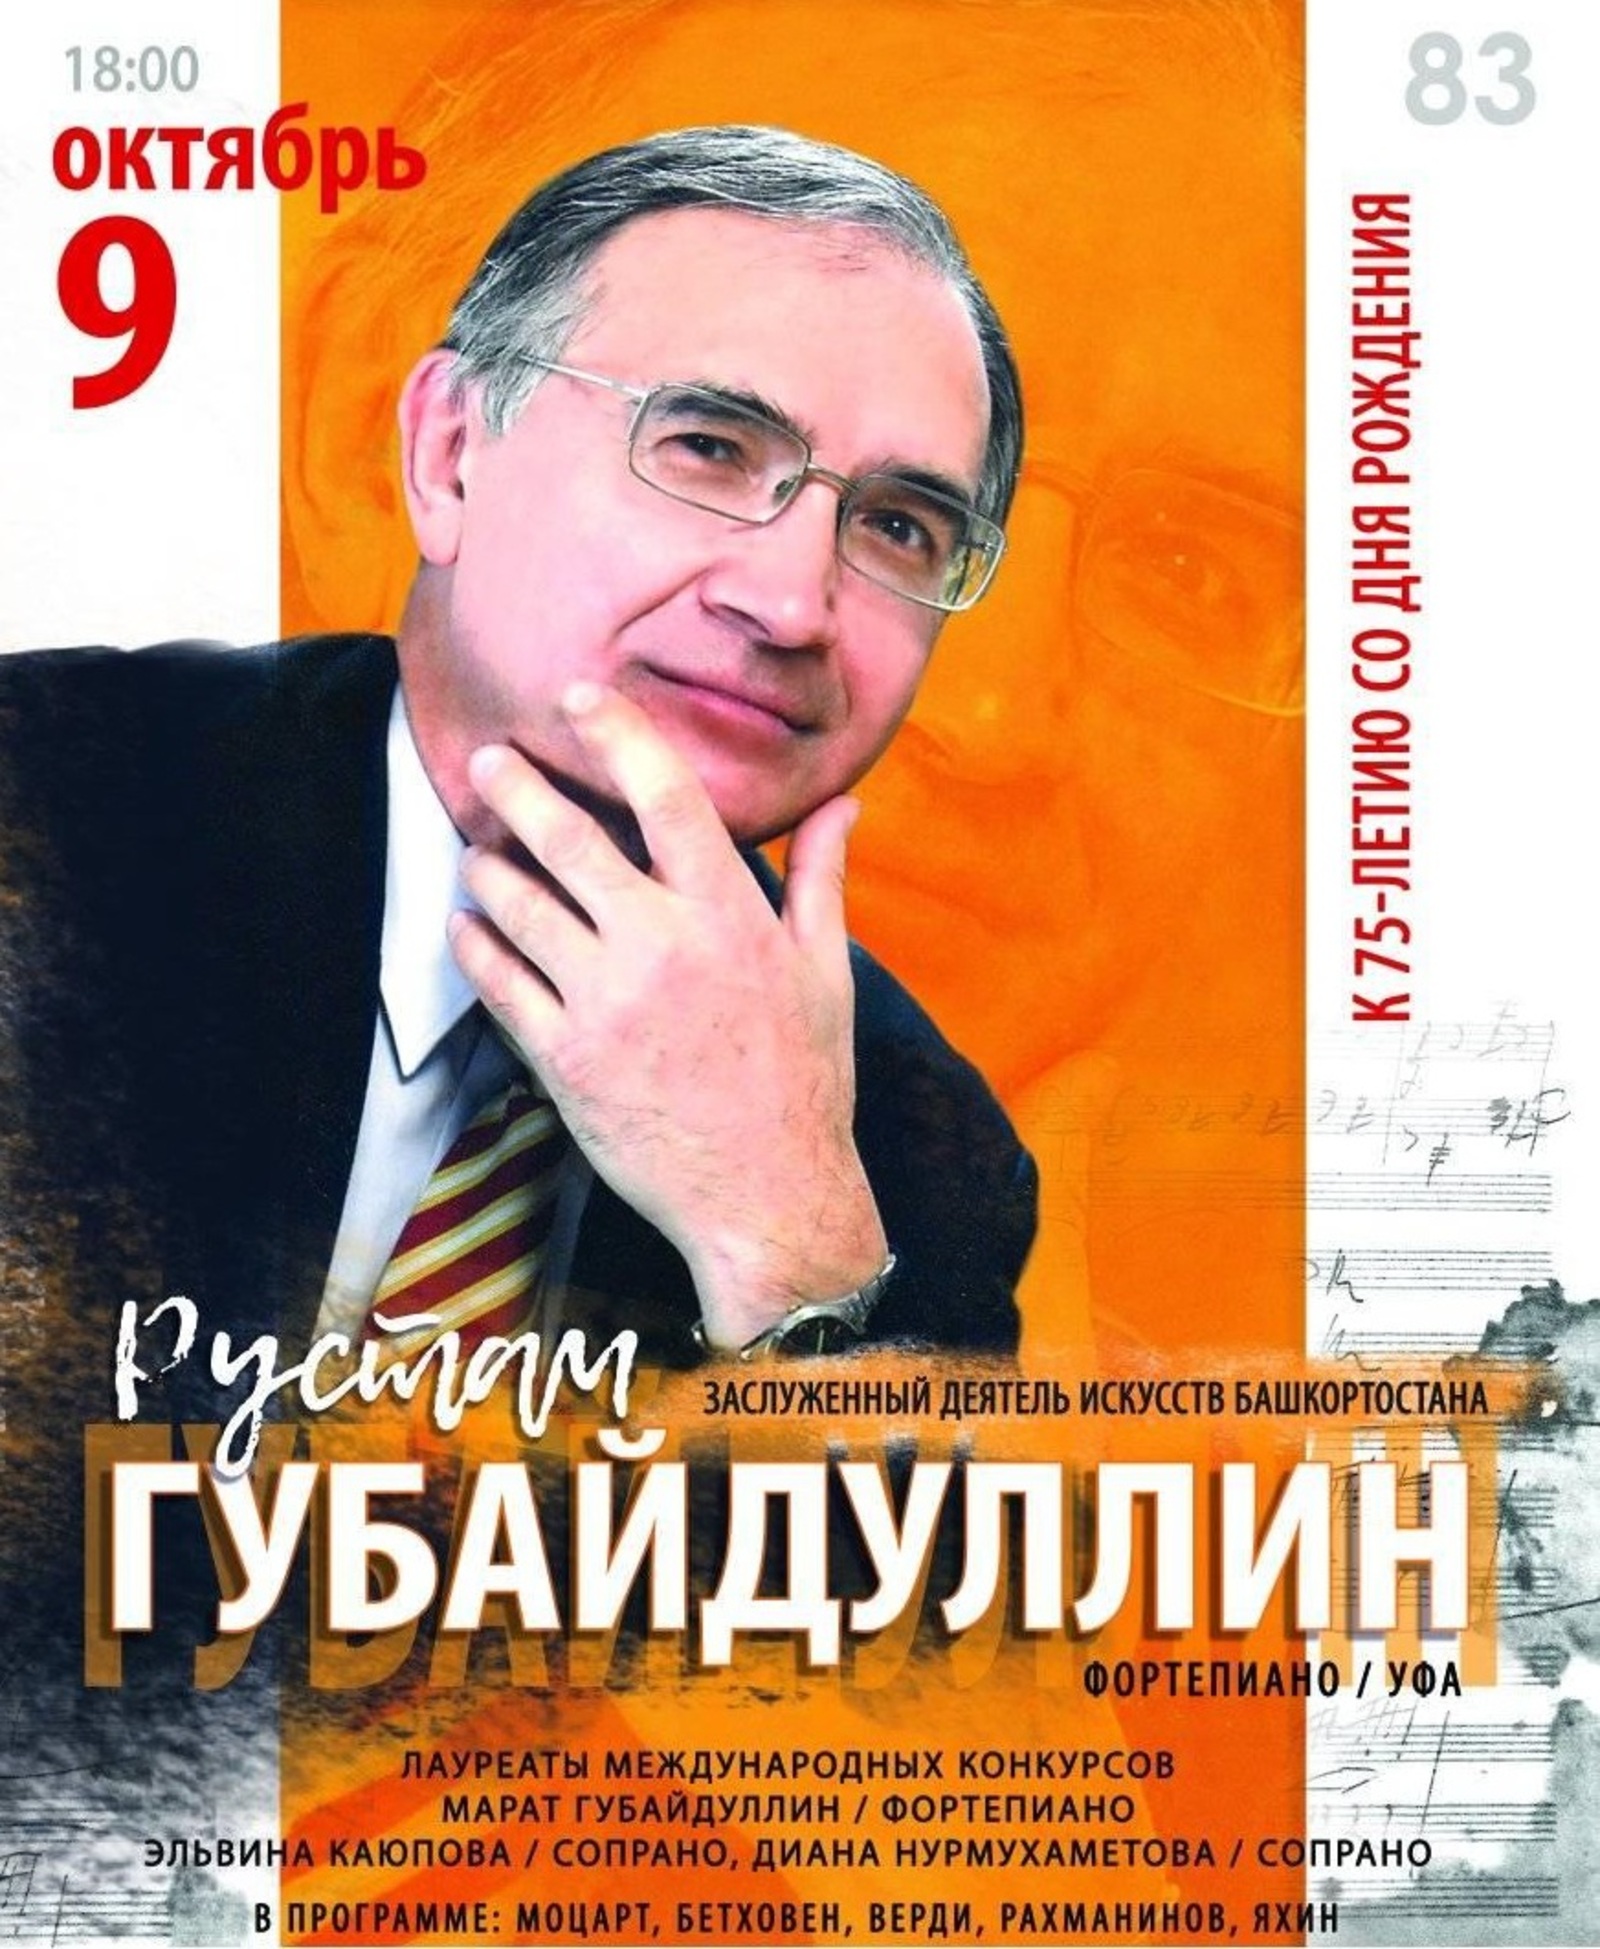 9 октября состоялся юбилейный вечер Рустама Губайдуллина (фортепиано, Уфа)